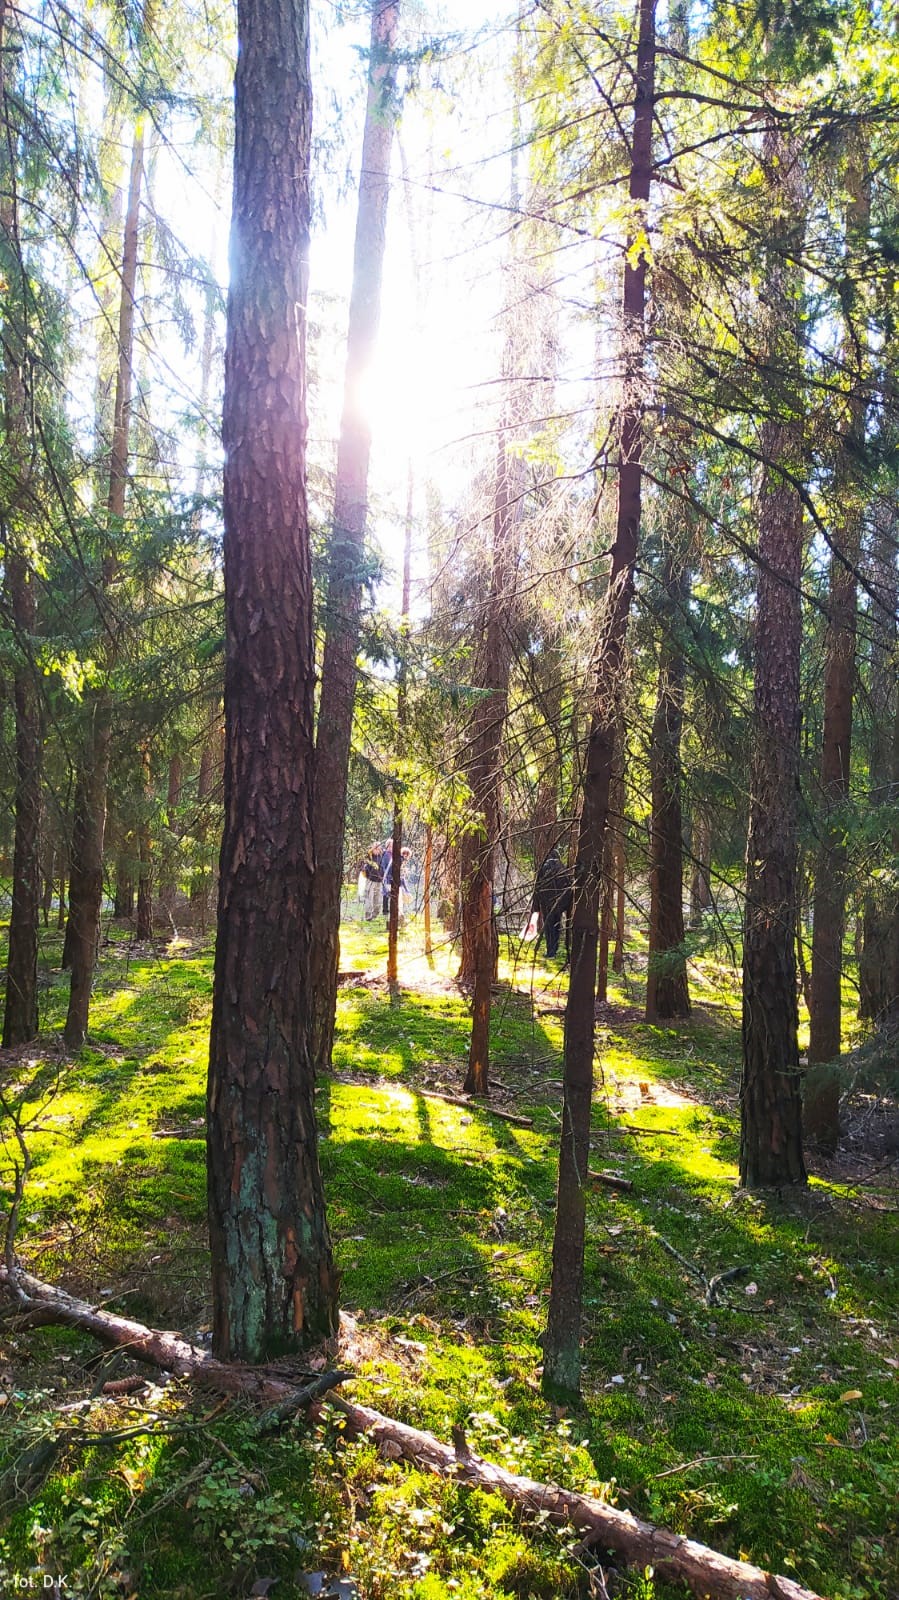 Na zdjęciu krajobraz leśny, wysokie drzewa iglaste przeszyte promieniami słońca w oddali grupa grzybiarzy. Runo leśne pokryte mchem w kolorze soczystej zieleni